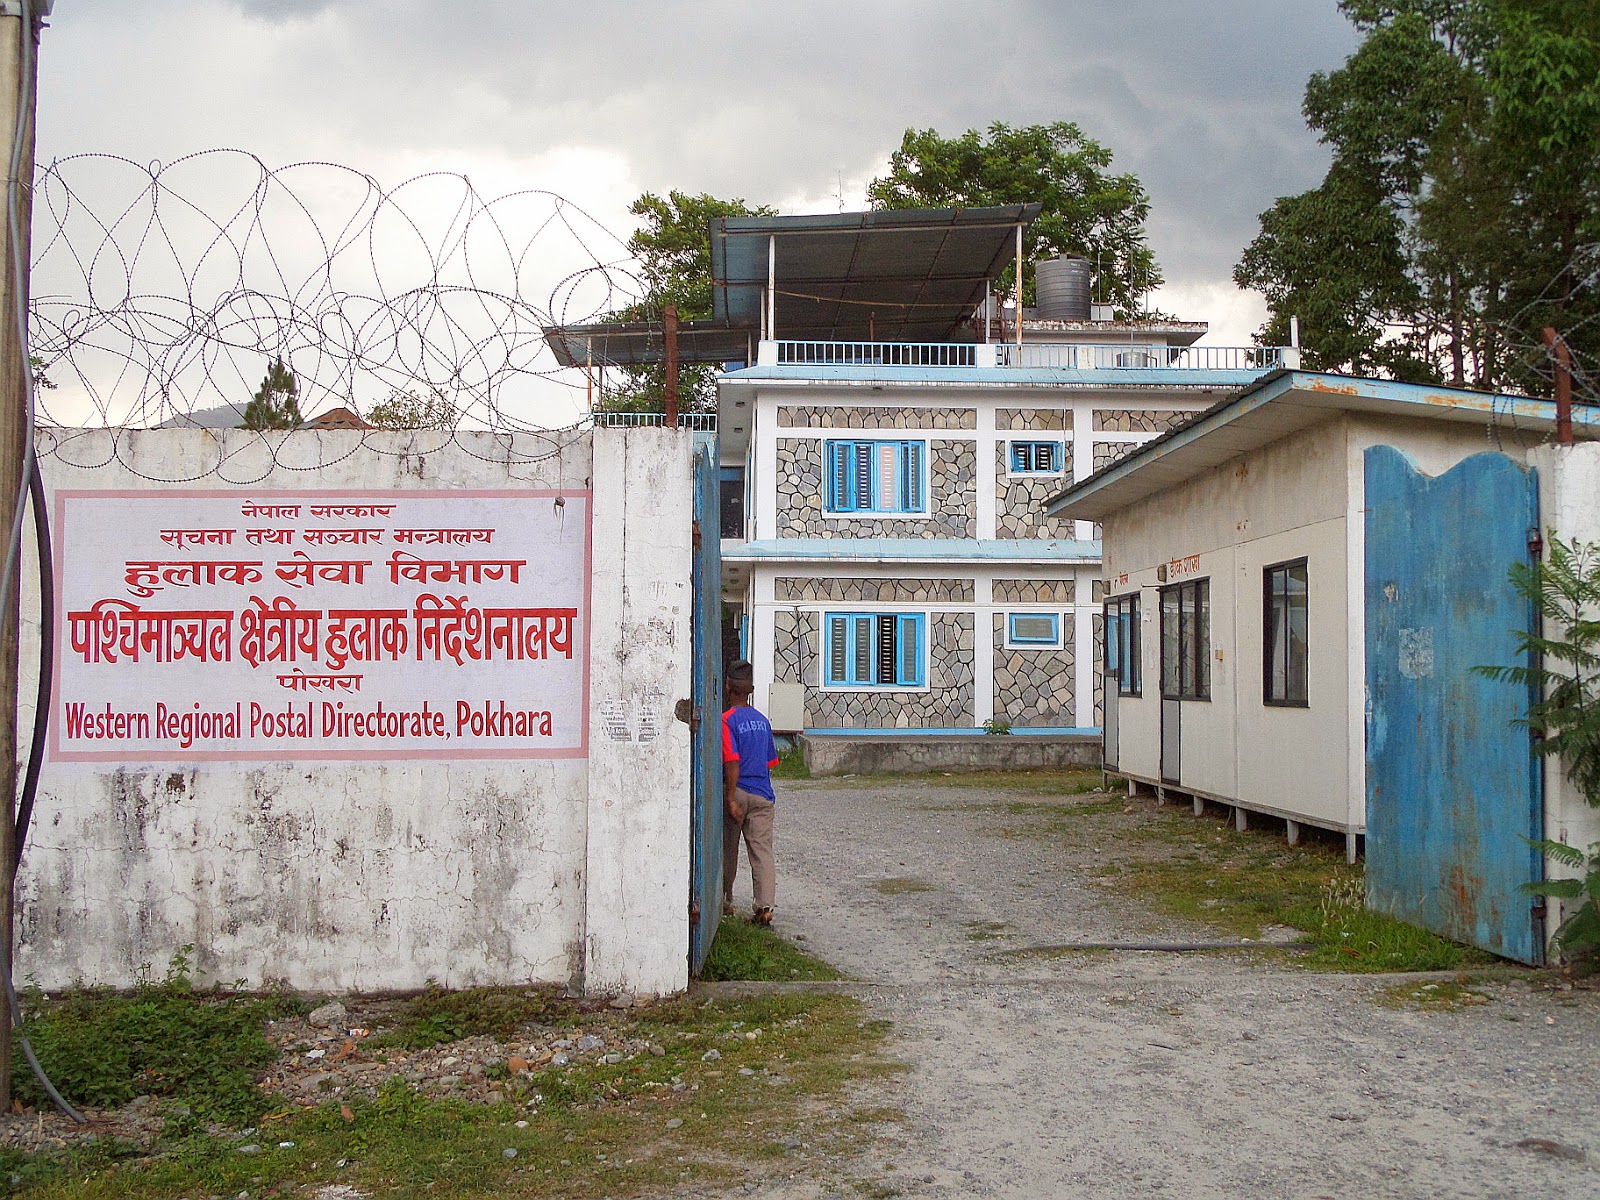 Yesterday I visit Post Office of Pokhara